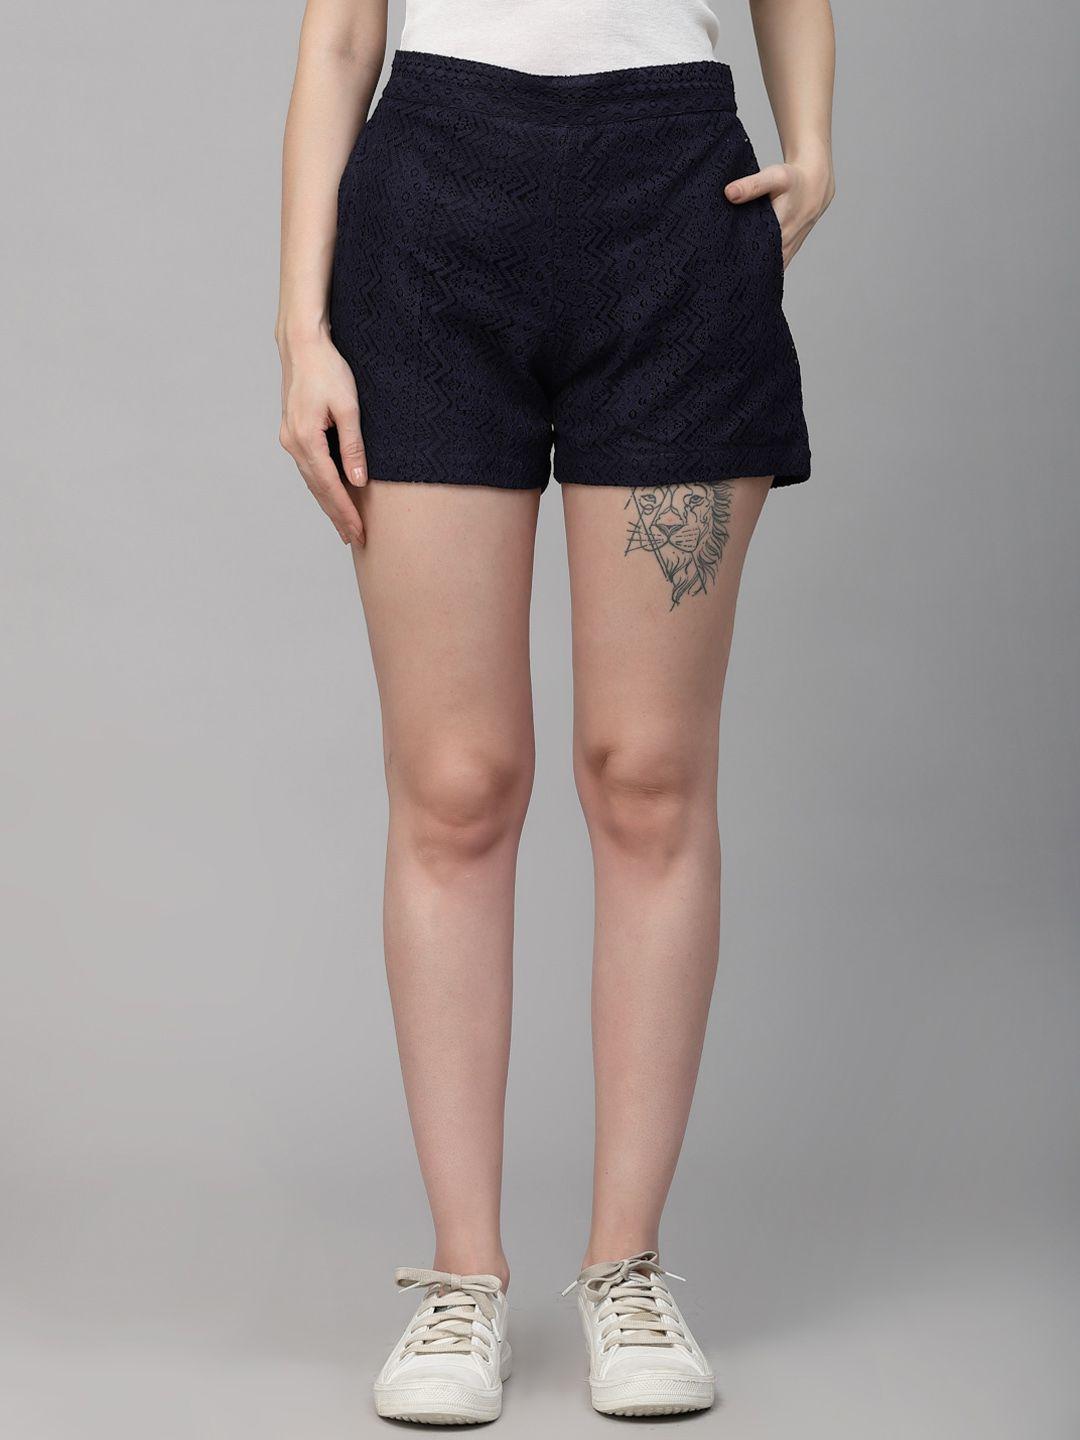 style-quotient-women-mid-rise-hot-pants-shorts